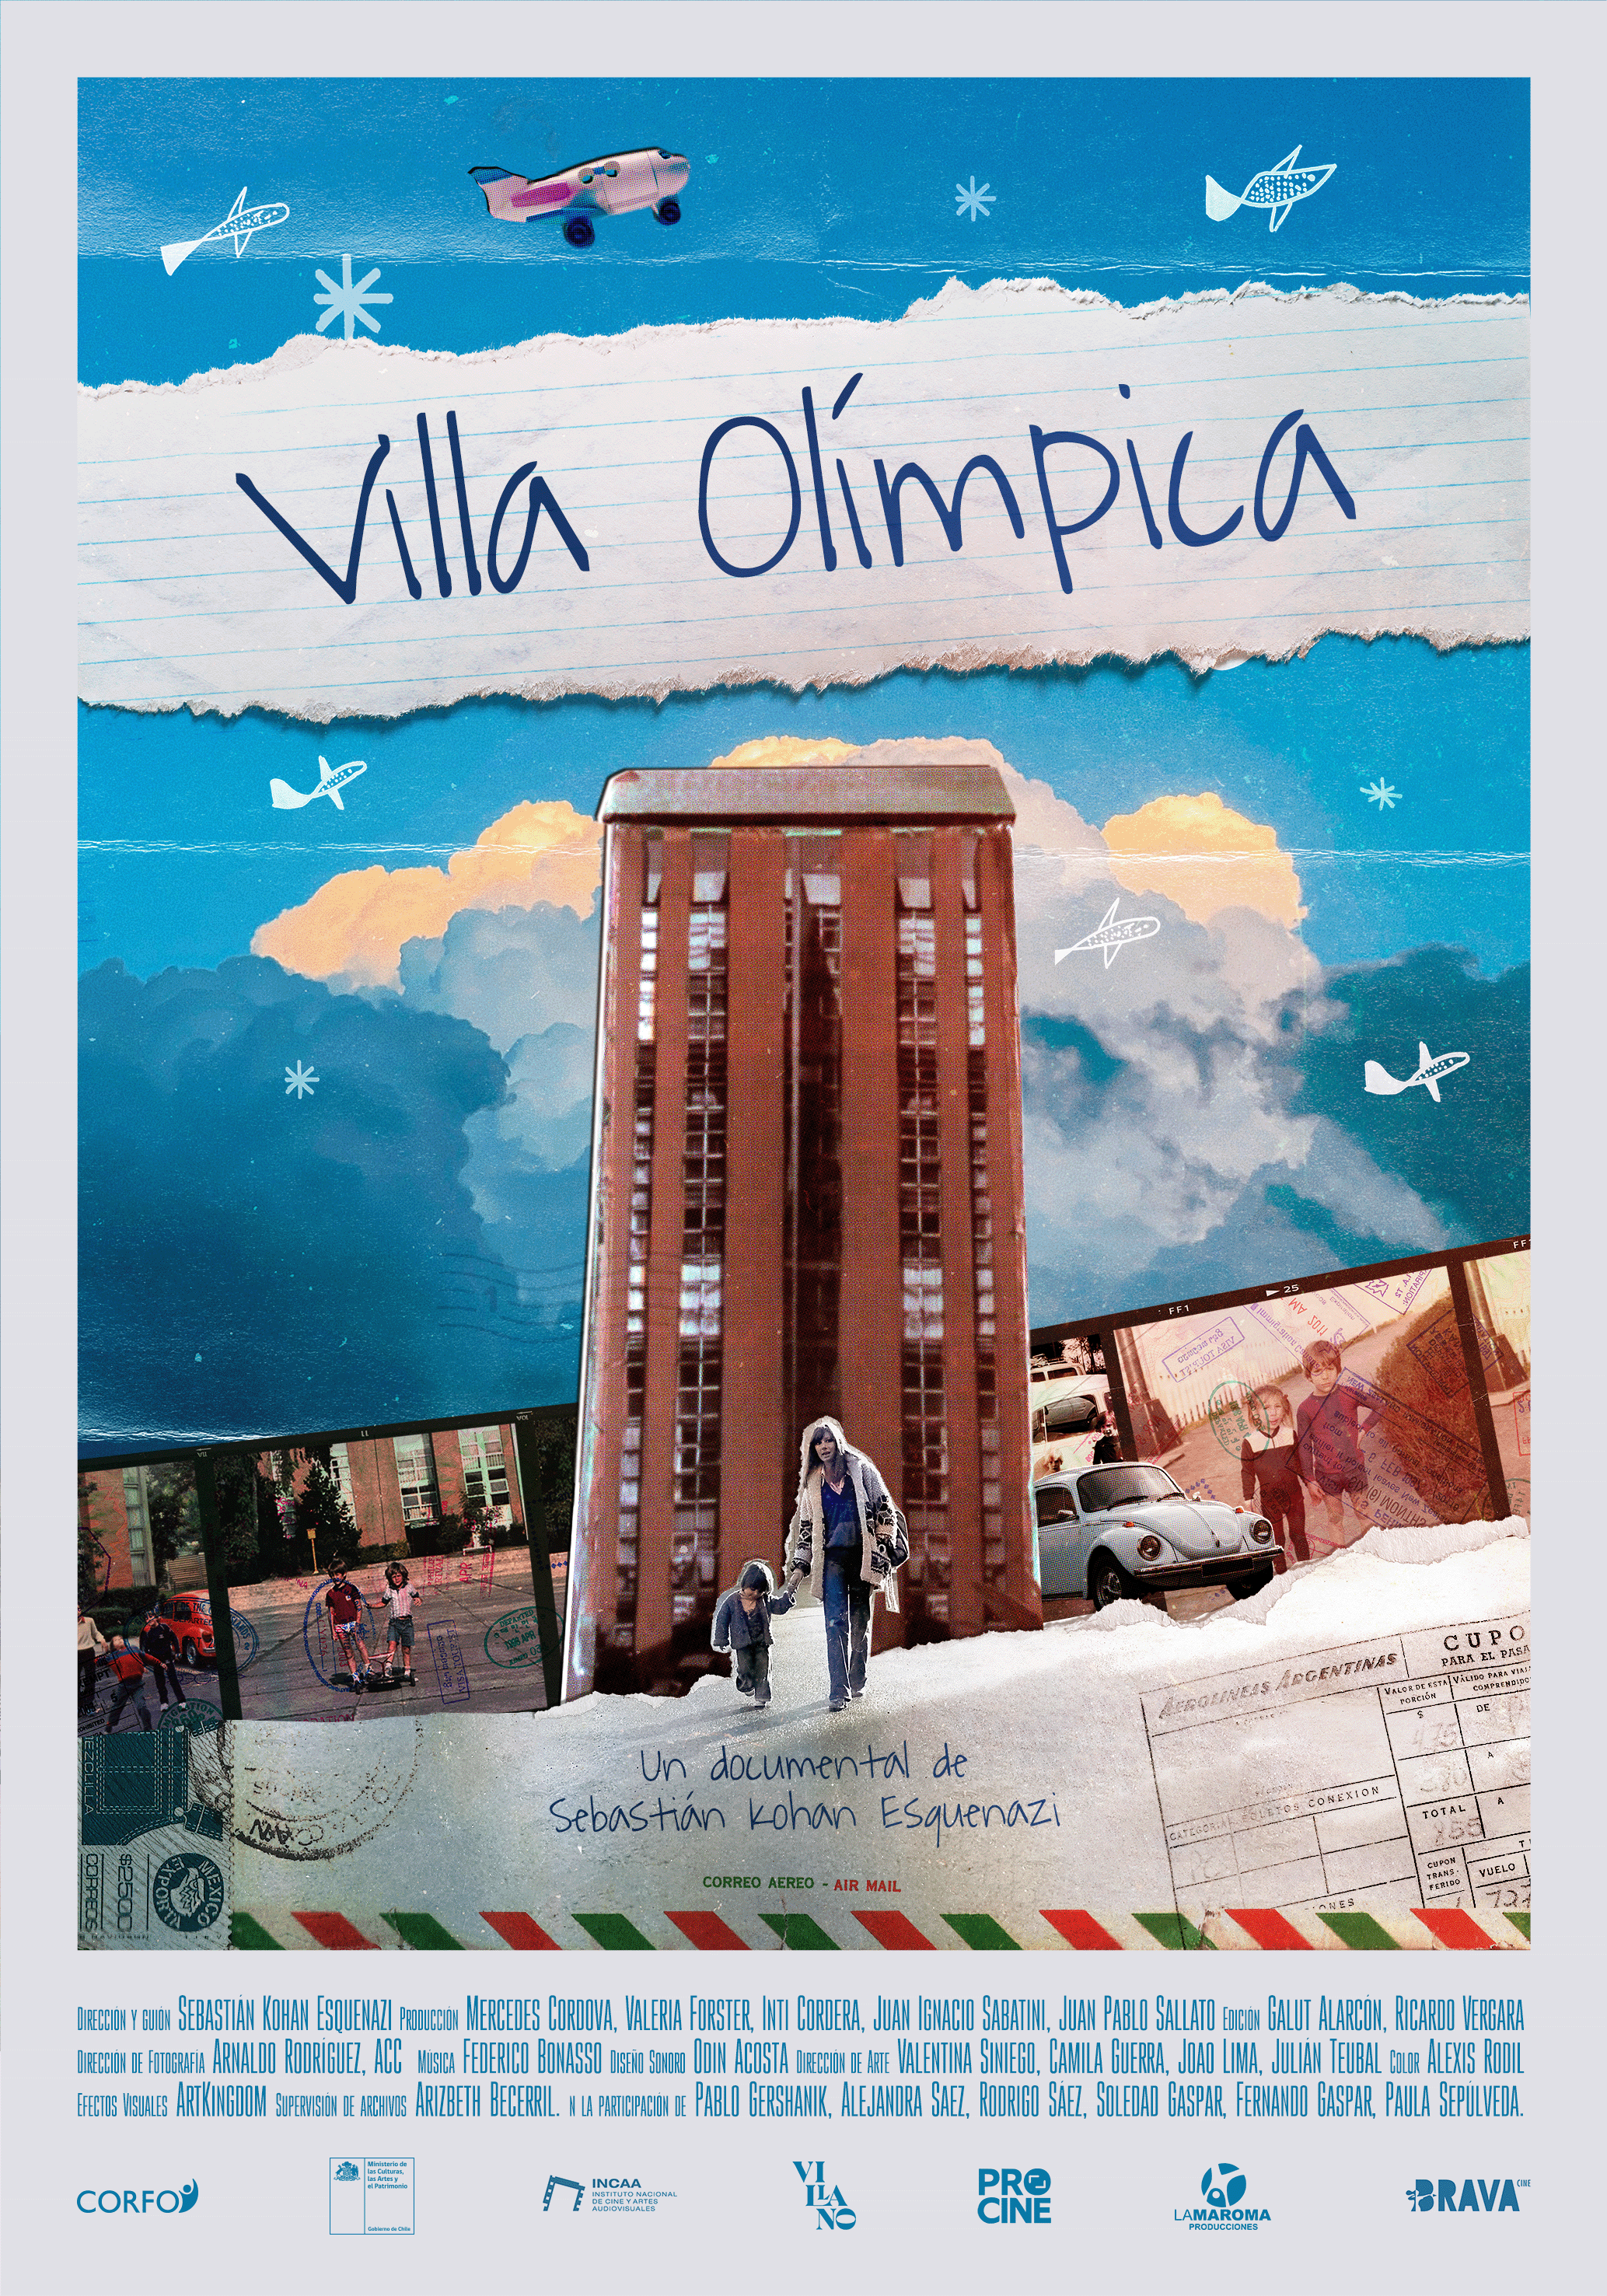 232916f11e1c3422421b8472cf2c18d5-Poster_Villa-Olimpica_v5